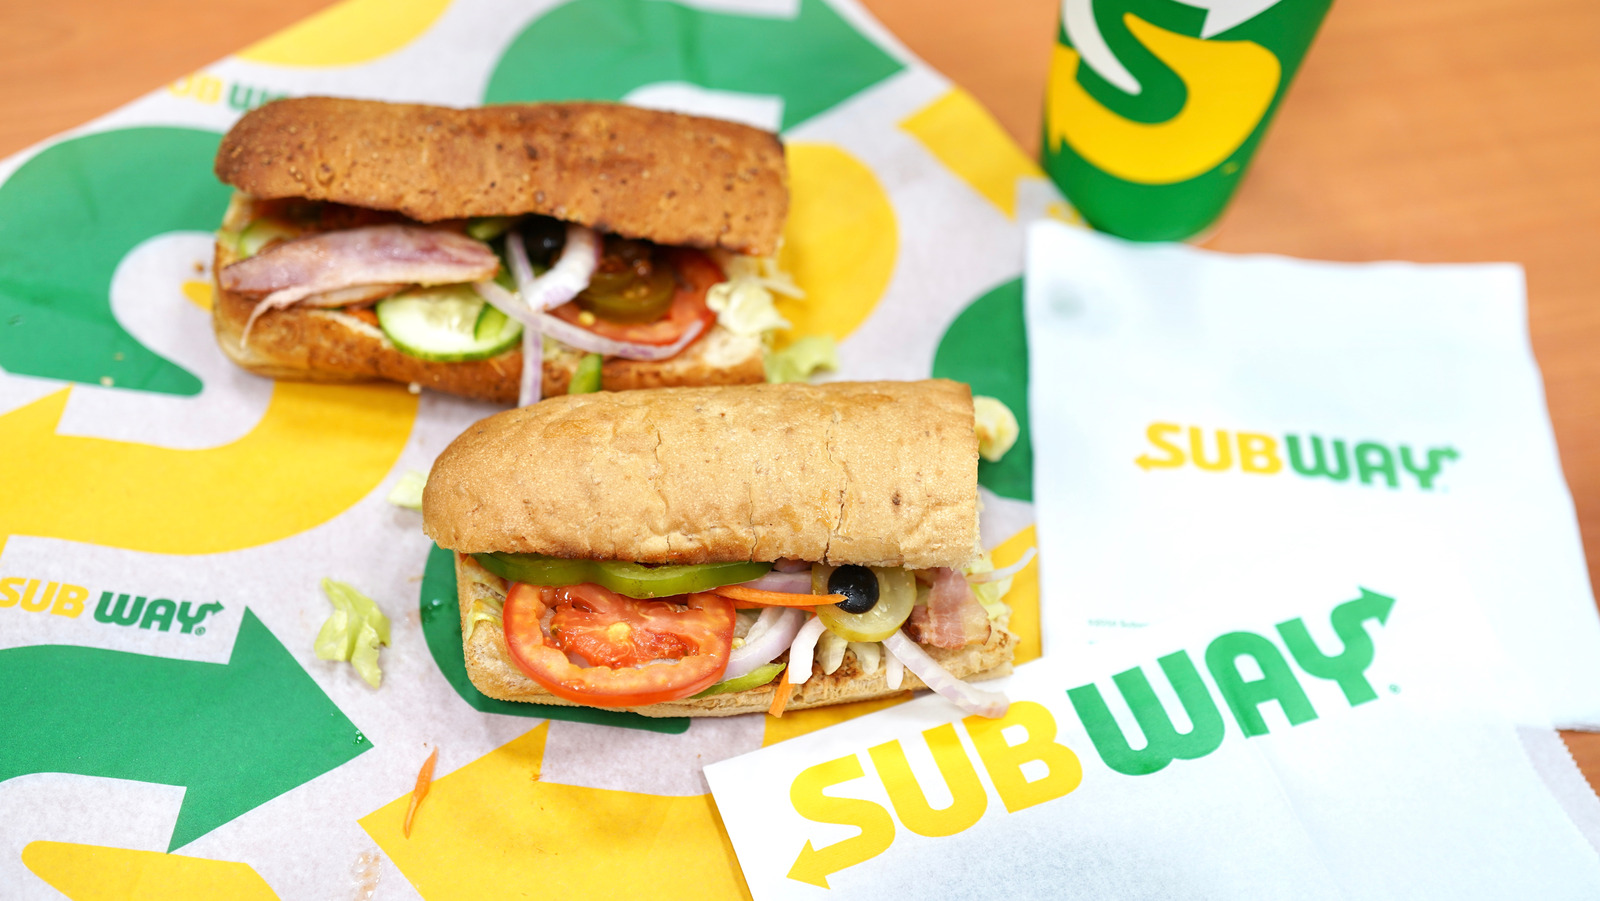 Subway AI Fridges Sell Premade Sandwiches, Hear You Talk